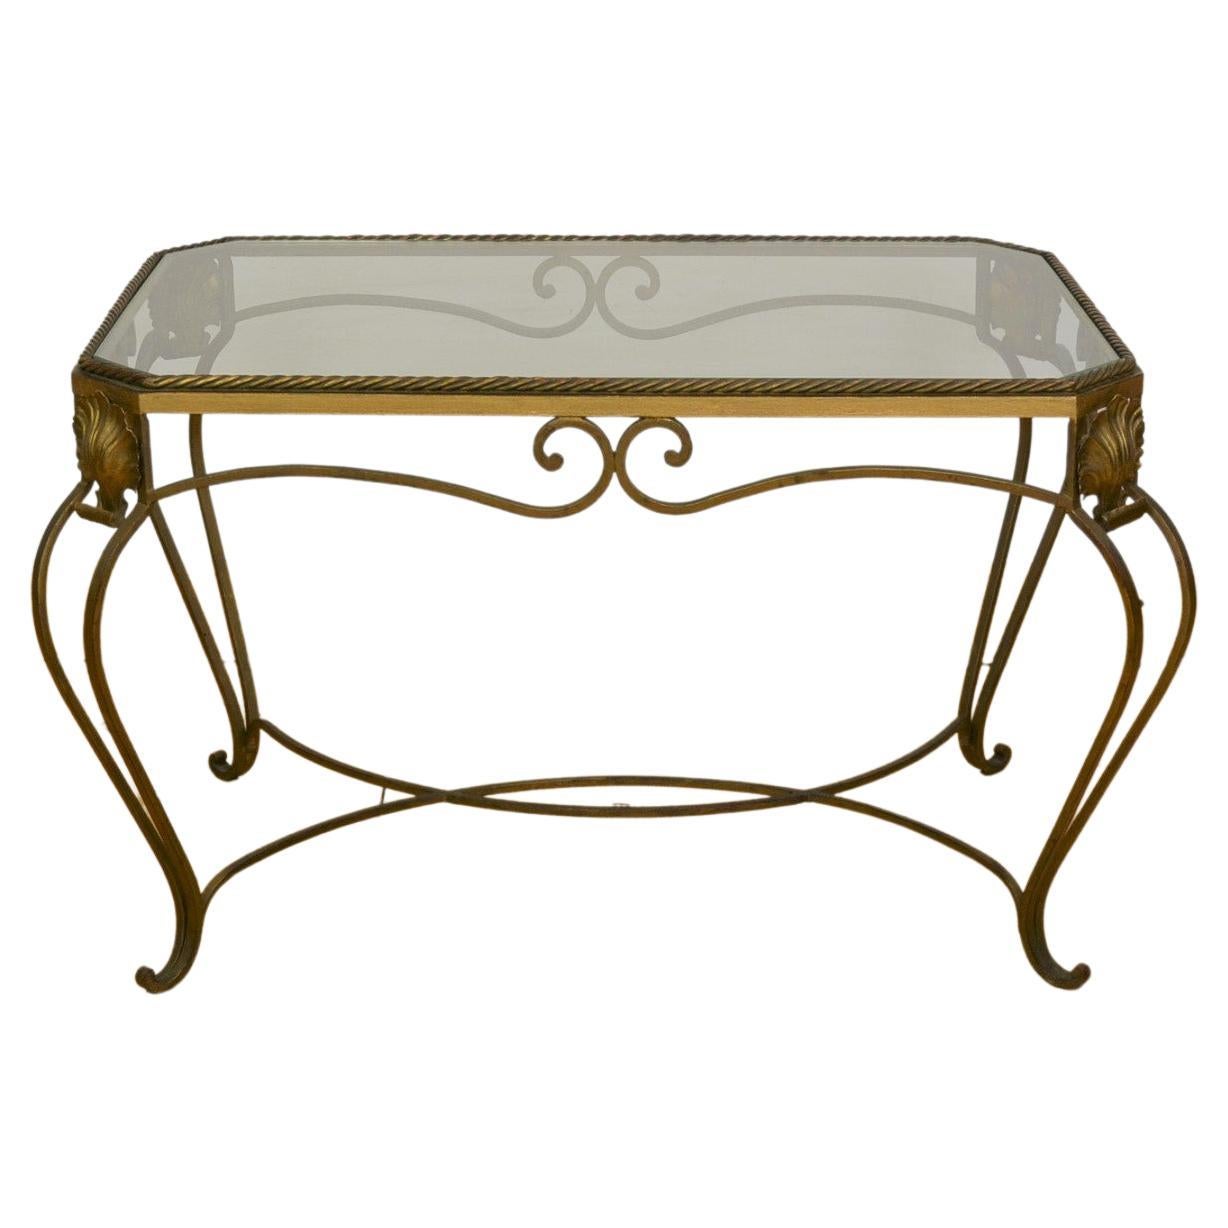 Table d'appoint en métal doré, table basse avec cordes et coquillages